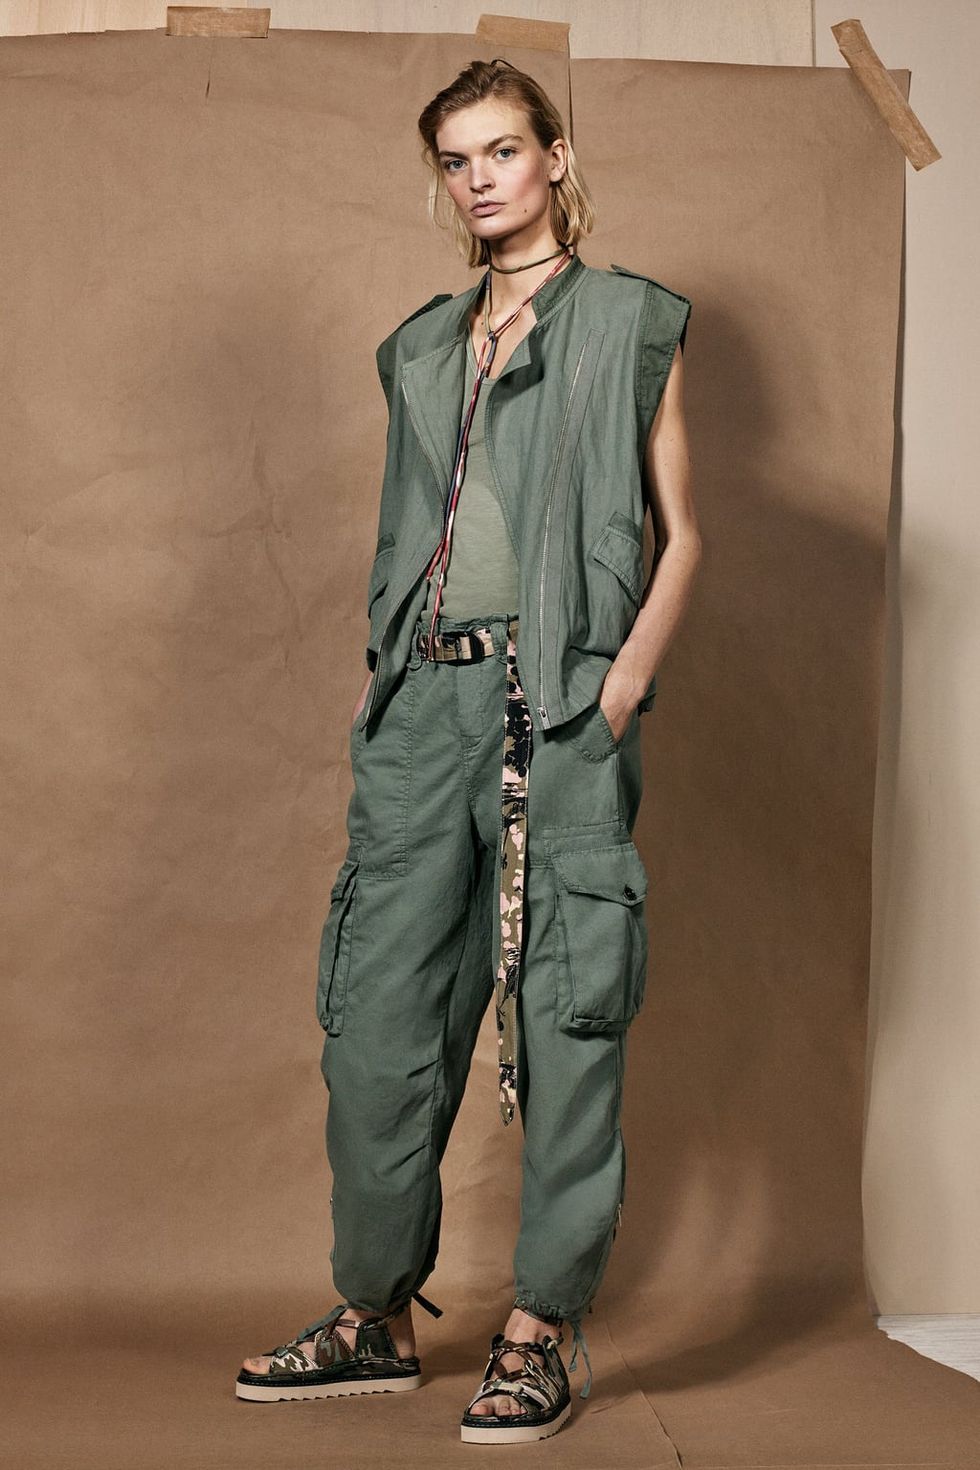 La nueva colección de Zara SRPLS tiñe el look militar de blanco